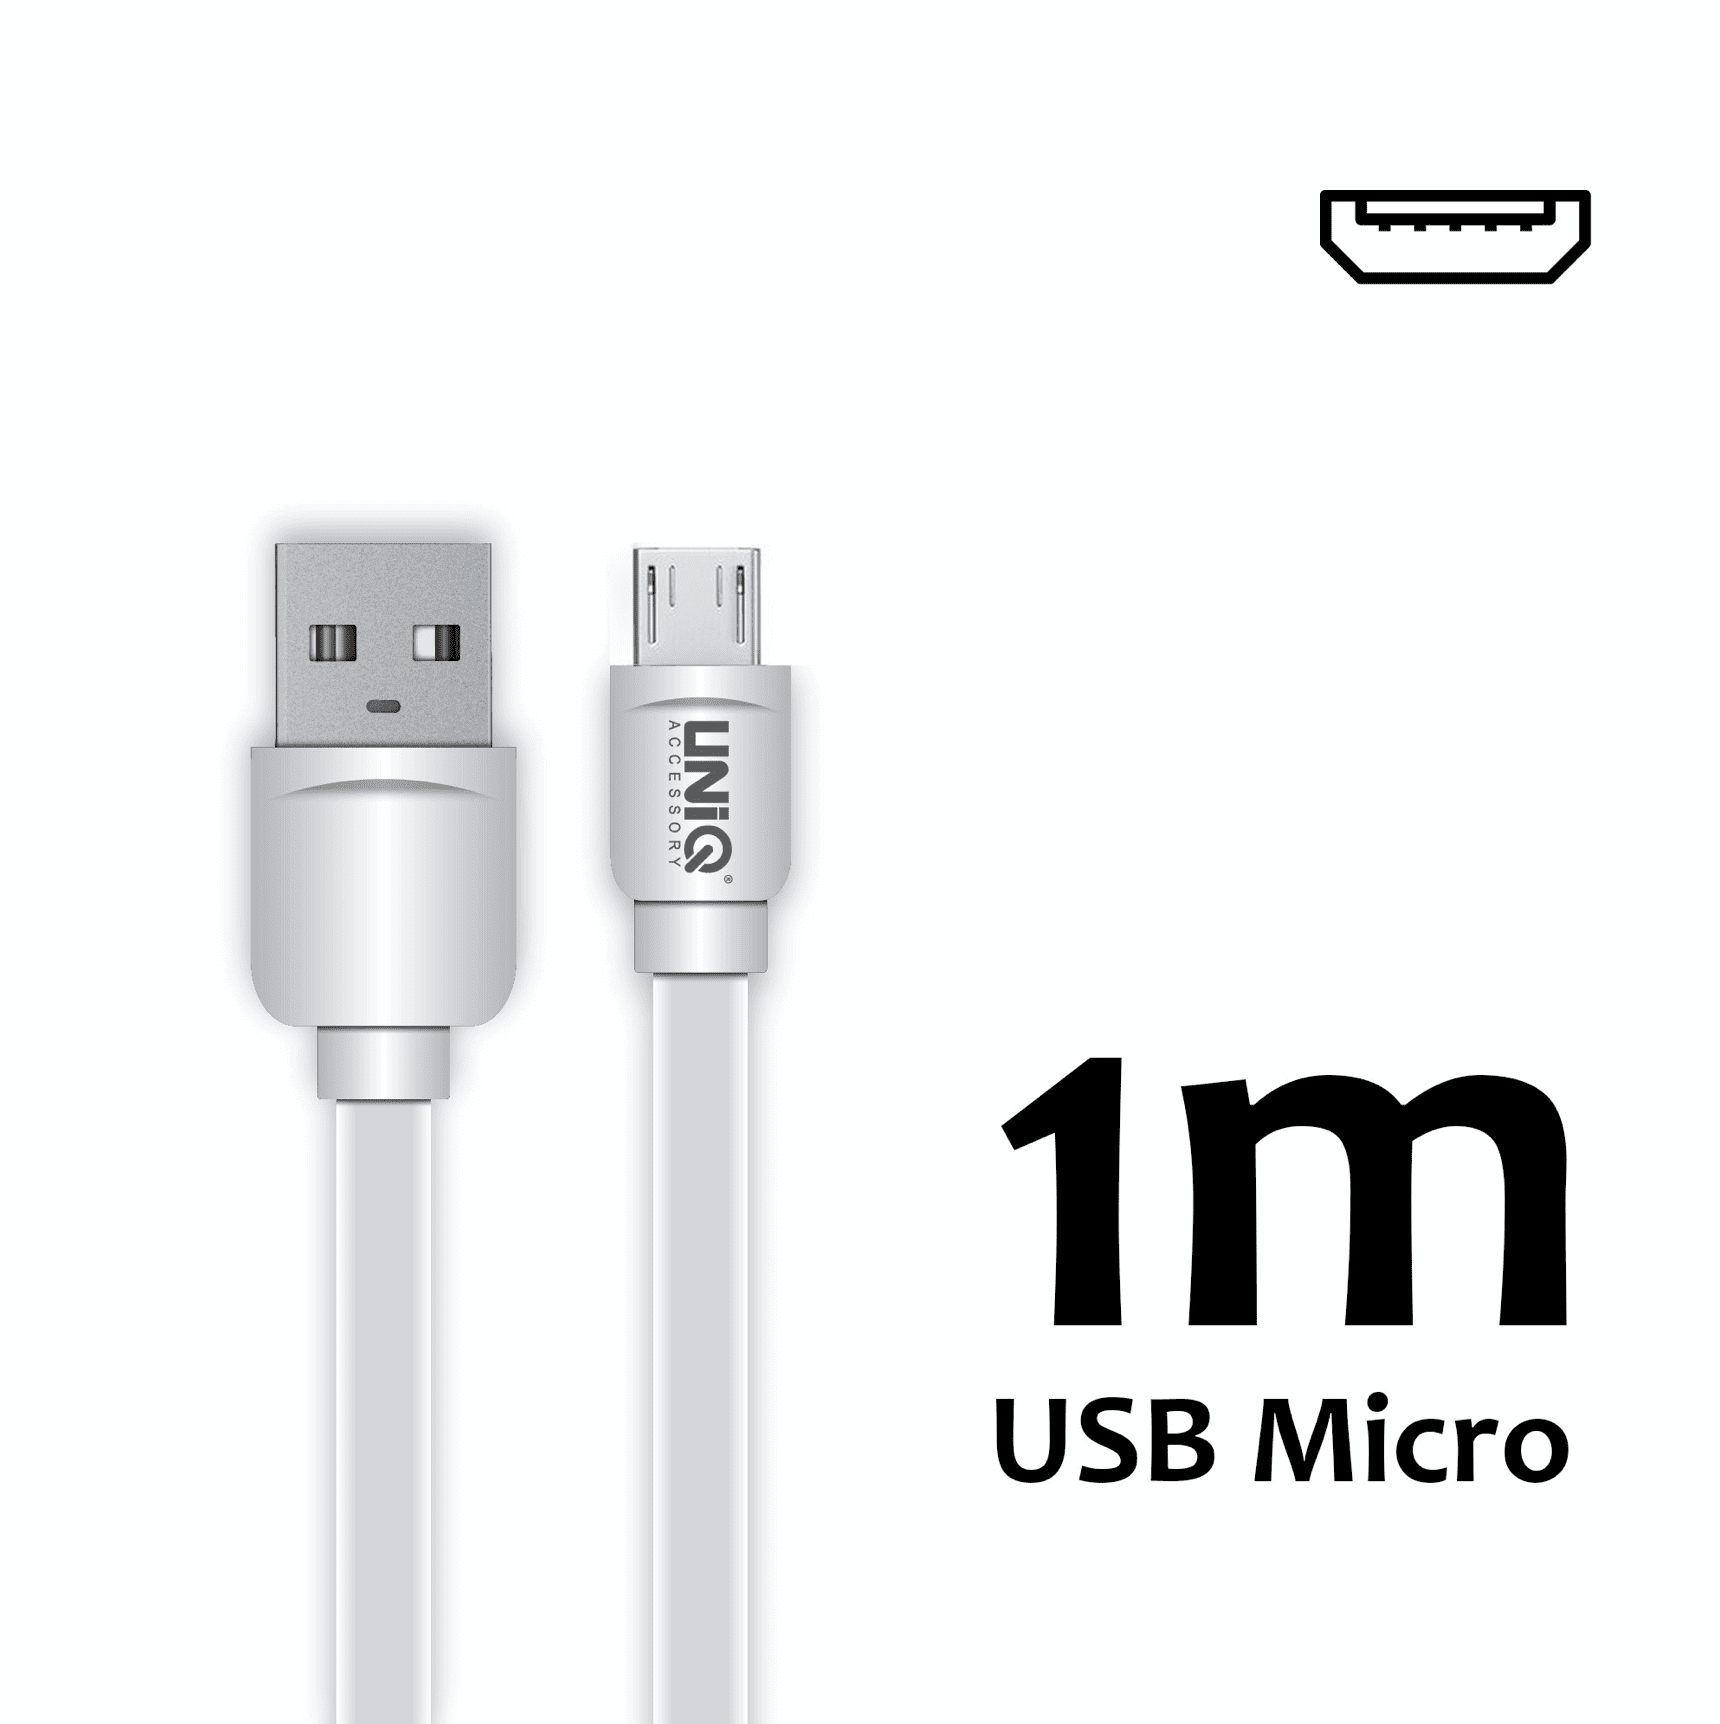 Micro USB Cable - 1 Meter White - Fast Charging/Data Transfer 2.1A - Uniq Accessory